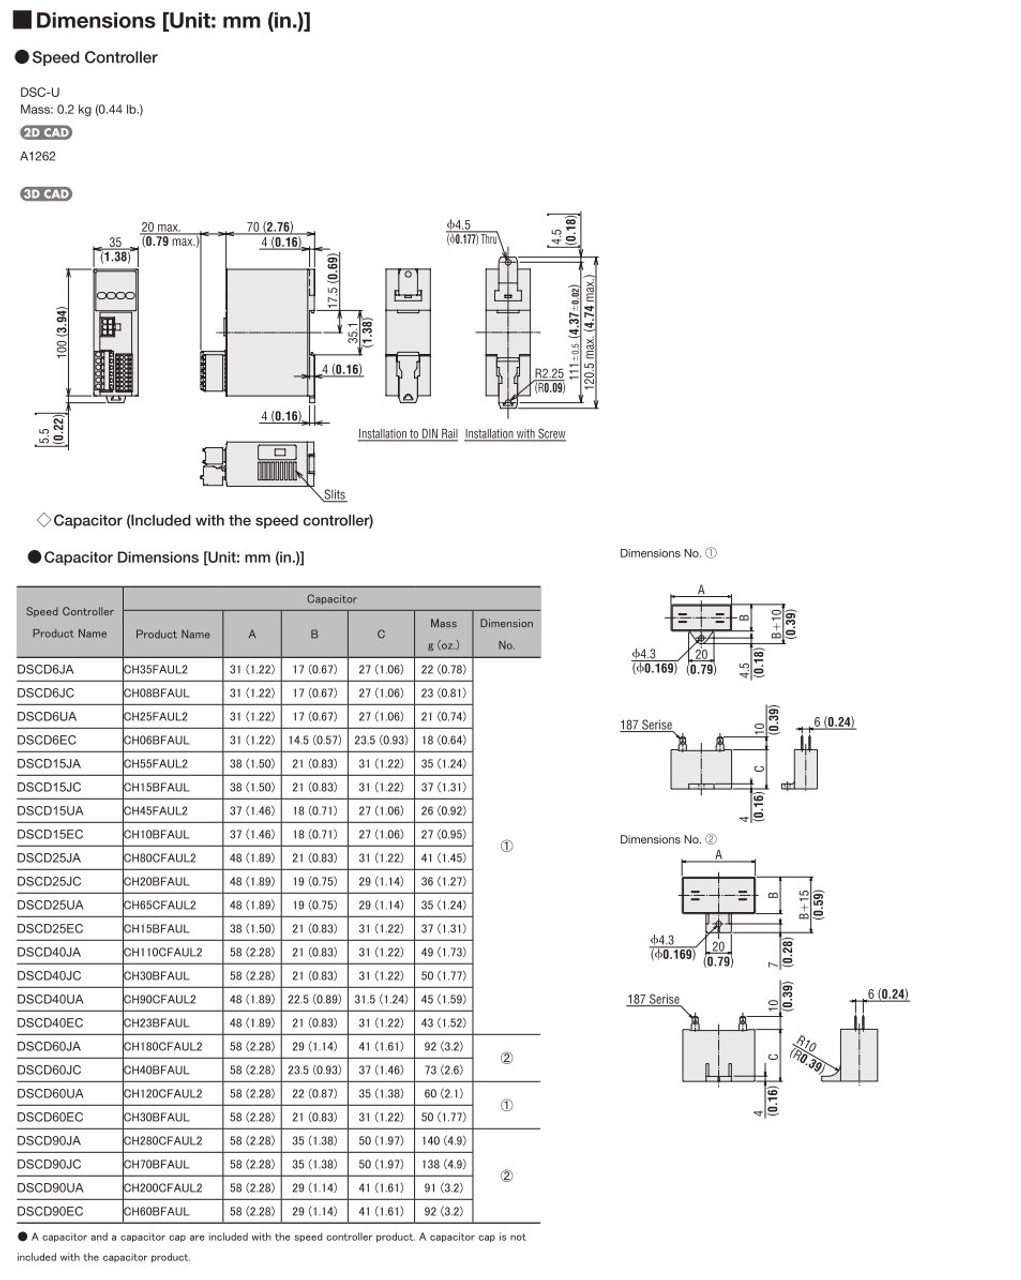 SCM315ECM-300A / DSCD15ECM - Dimensions